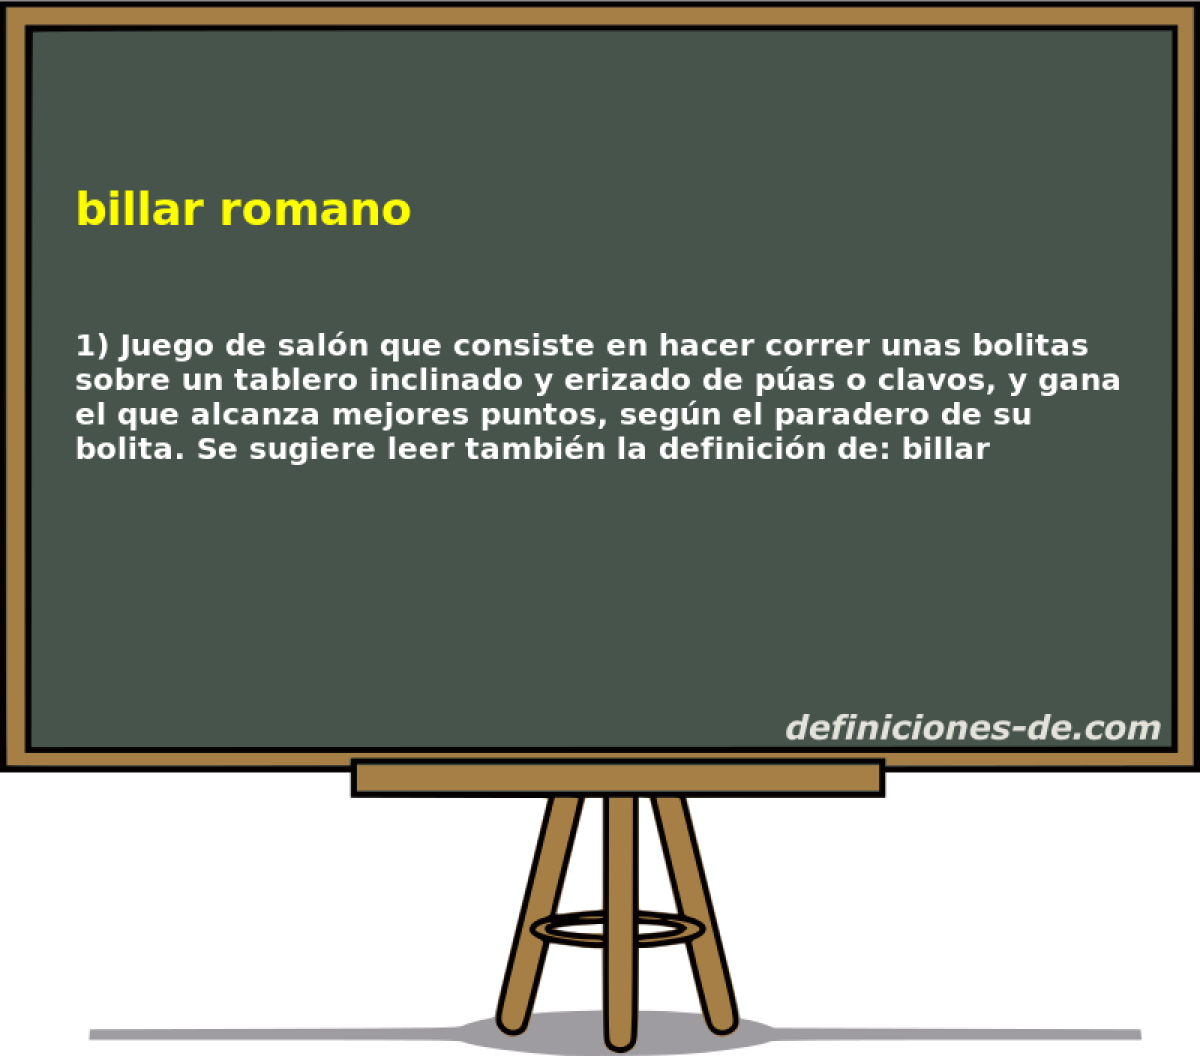 billar romano 